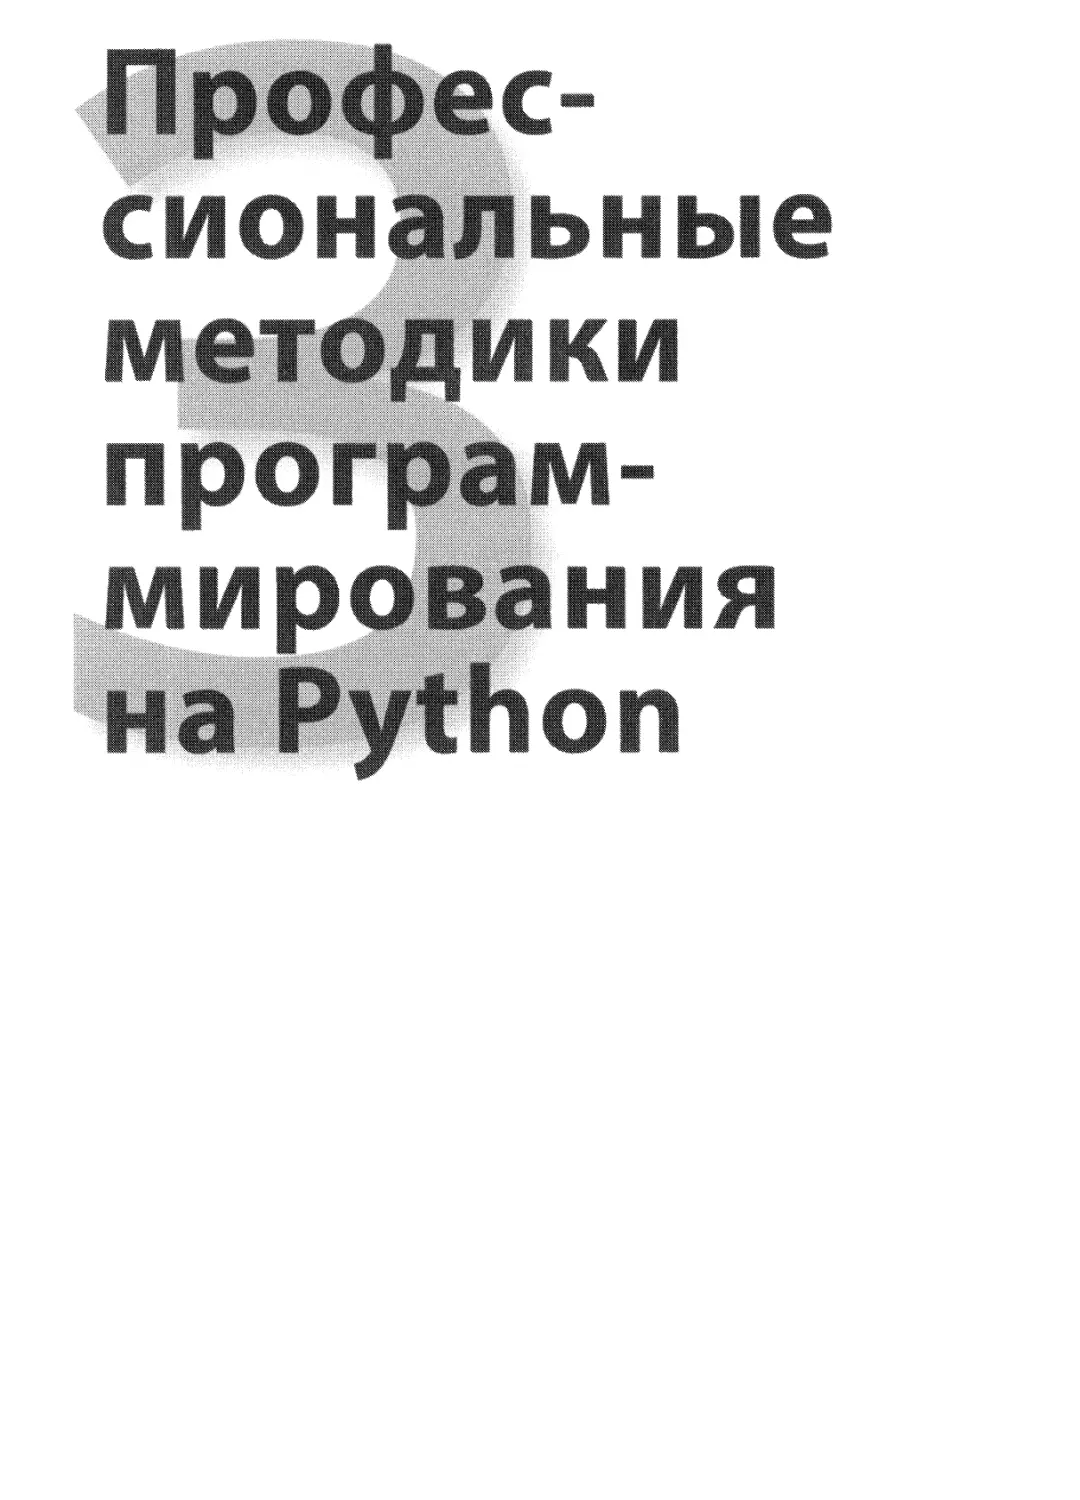 III.  Профессиональные методики программирования на Python